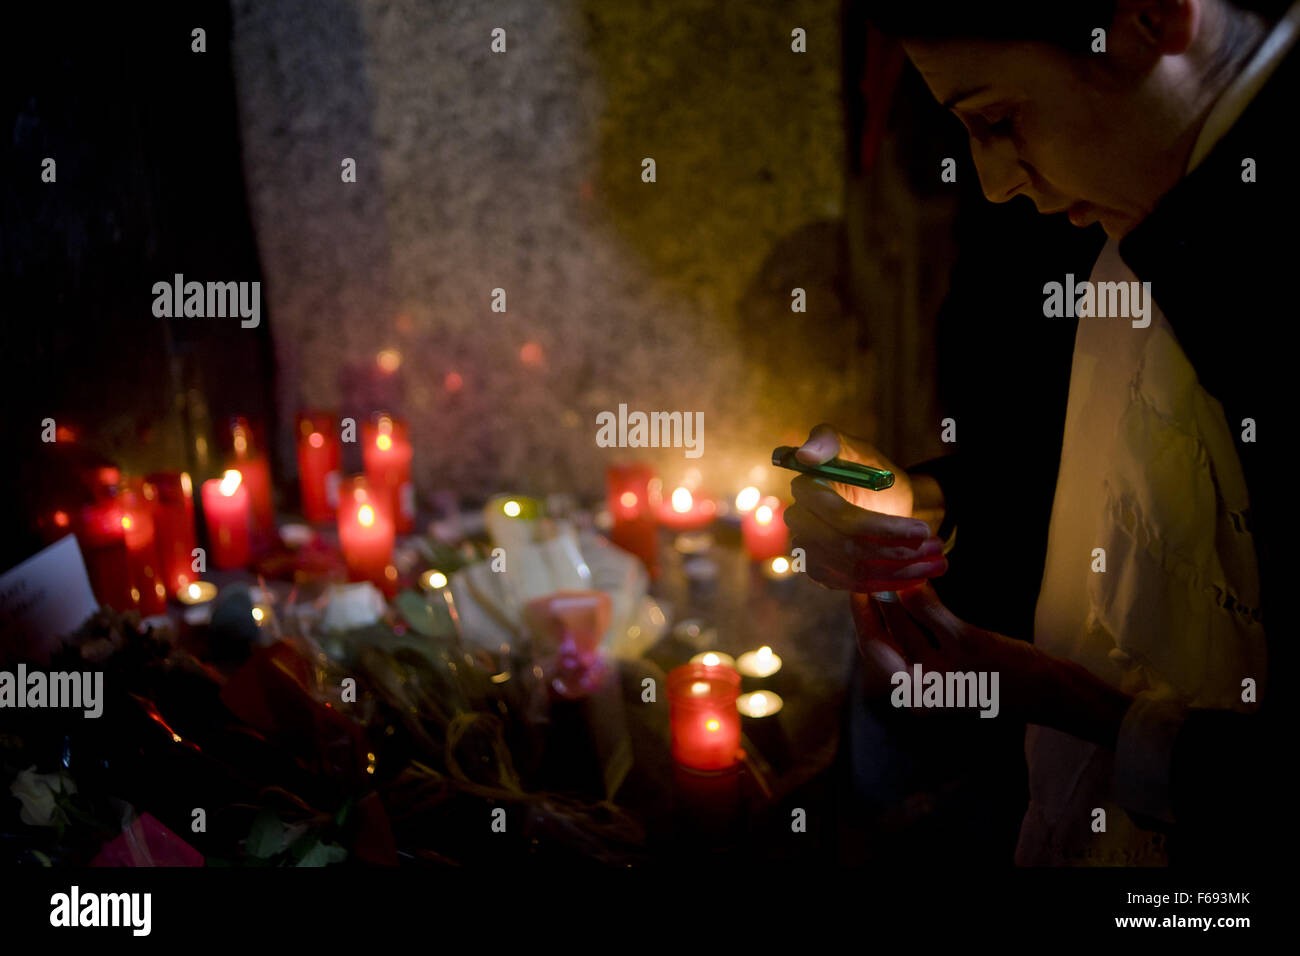 Barcelone, Catalogne, Espagne. 14Th Nov, 2015. Une femme met une bougie à la mémoire des victimes des attentats à Paris Consulat Général de France à Barcelone, Espagne, le 14 novembre, 2015. Plus de 120 personnes ont été tuées dans une série d'attentats à Paris le 13 novembre, selon les responsables français. Crédit : Jordi Boixareu/ZUMA/Alamy Fil Live News Banque D'Images